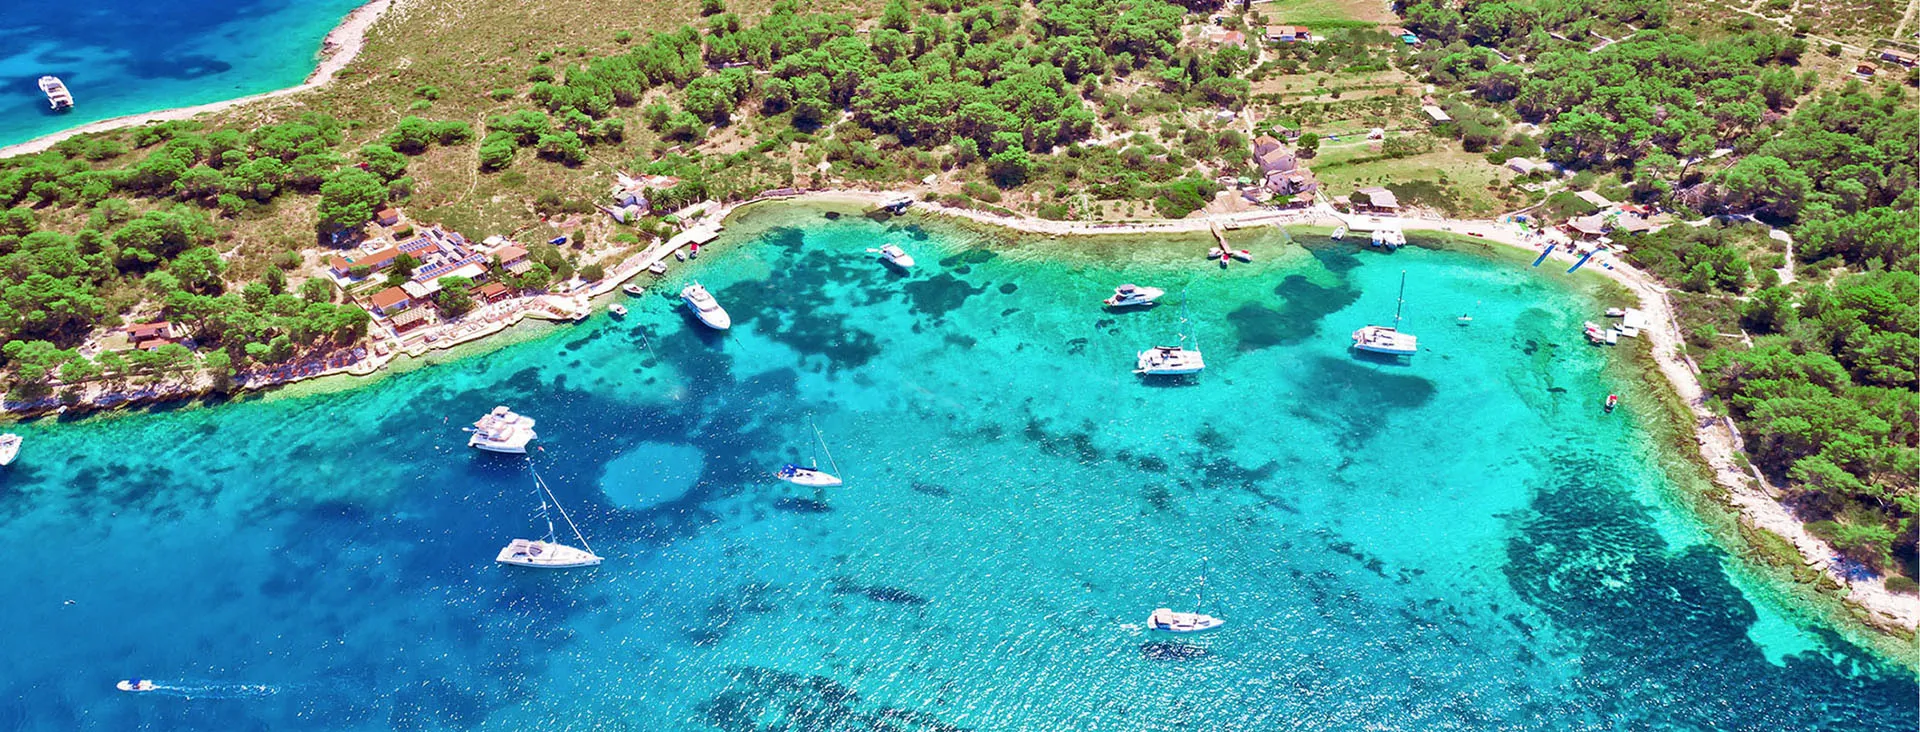 Veduta aerea di una baia cristallina con barche a vela tra le isole della Dalmazia